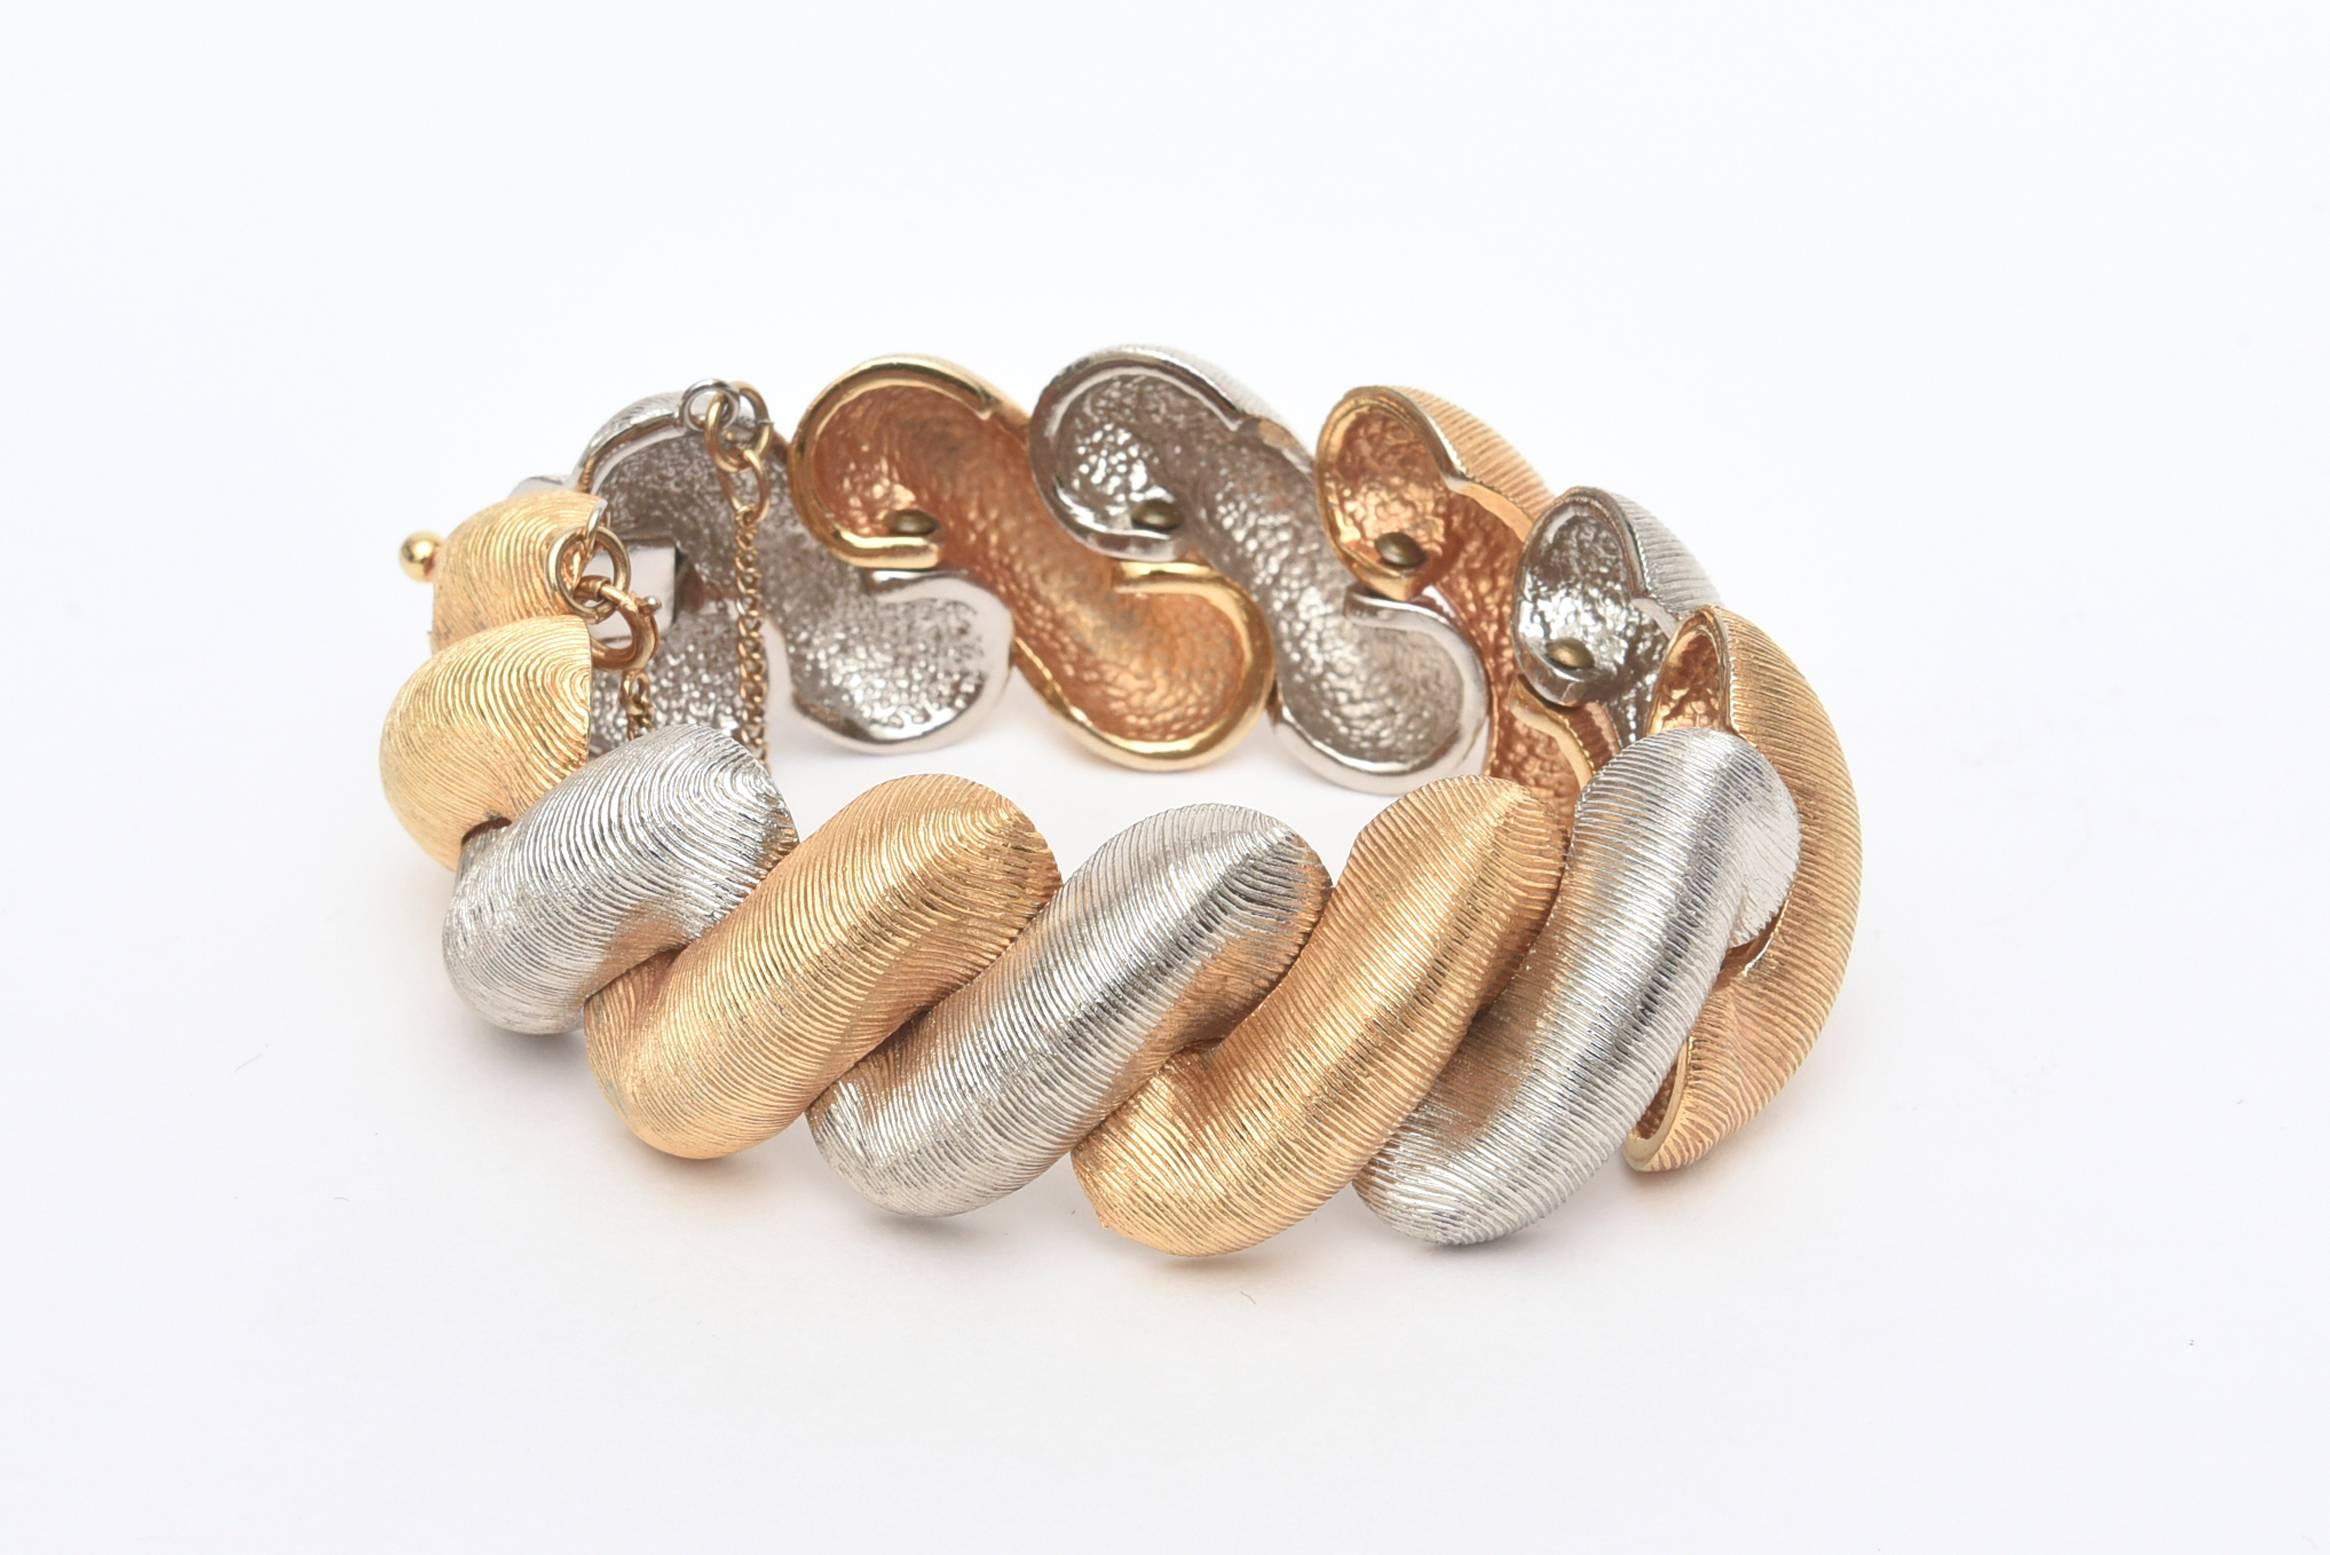 Ce superbe bracelet d'époque a l'air authentique et réel de Castlecliff. Il est finement doublé et les métaux présentent une finition satinée brossée. Il est d'une élégance moderne. Plaqué or et métal argenté, mais ressemble à de l'or véritable et à